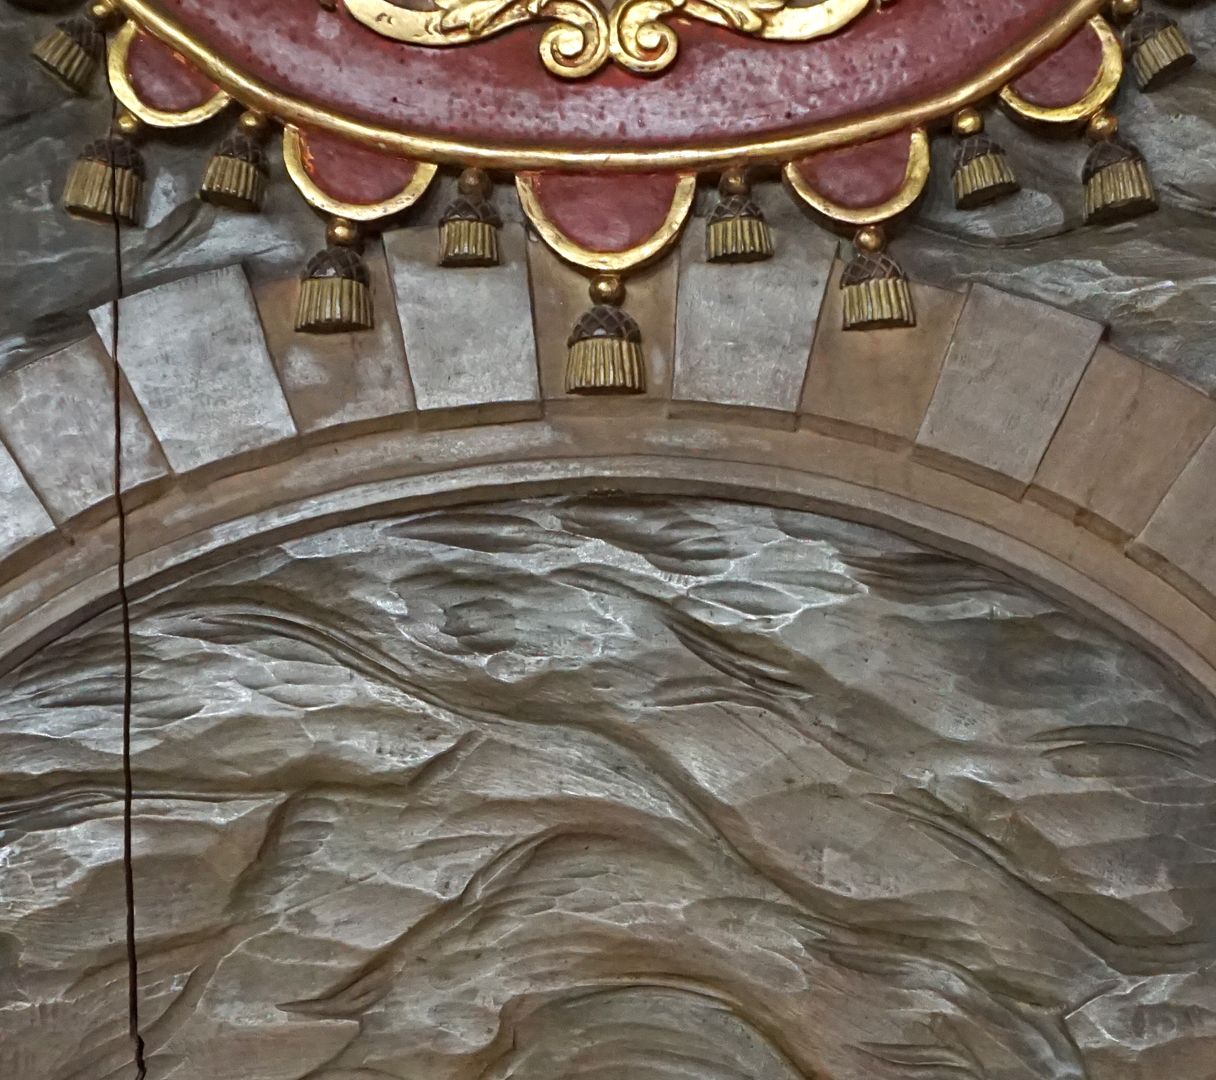 Kreuzwegstation XIV / Grabesruhe Detailansicht mit Troddeln an der oberen Kartusche und Rundbogen